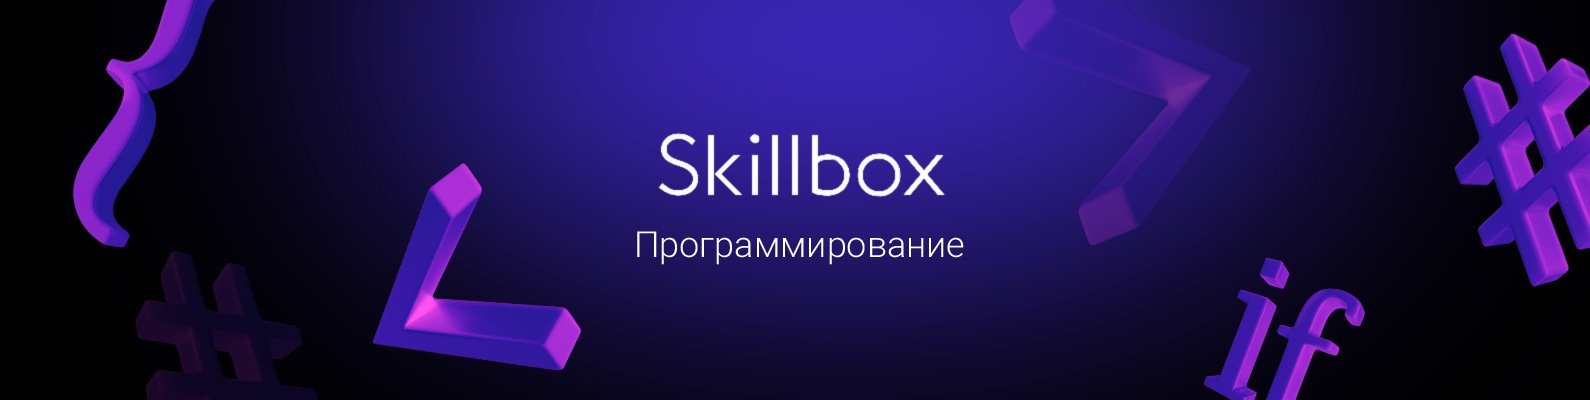 курсы дизайна skillbox